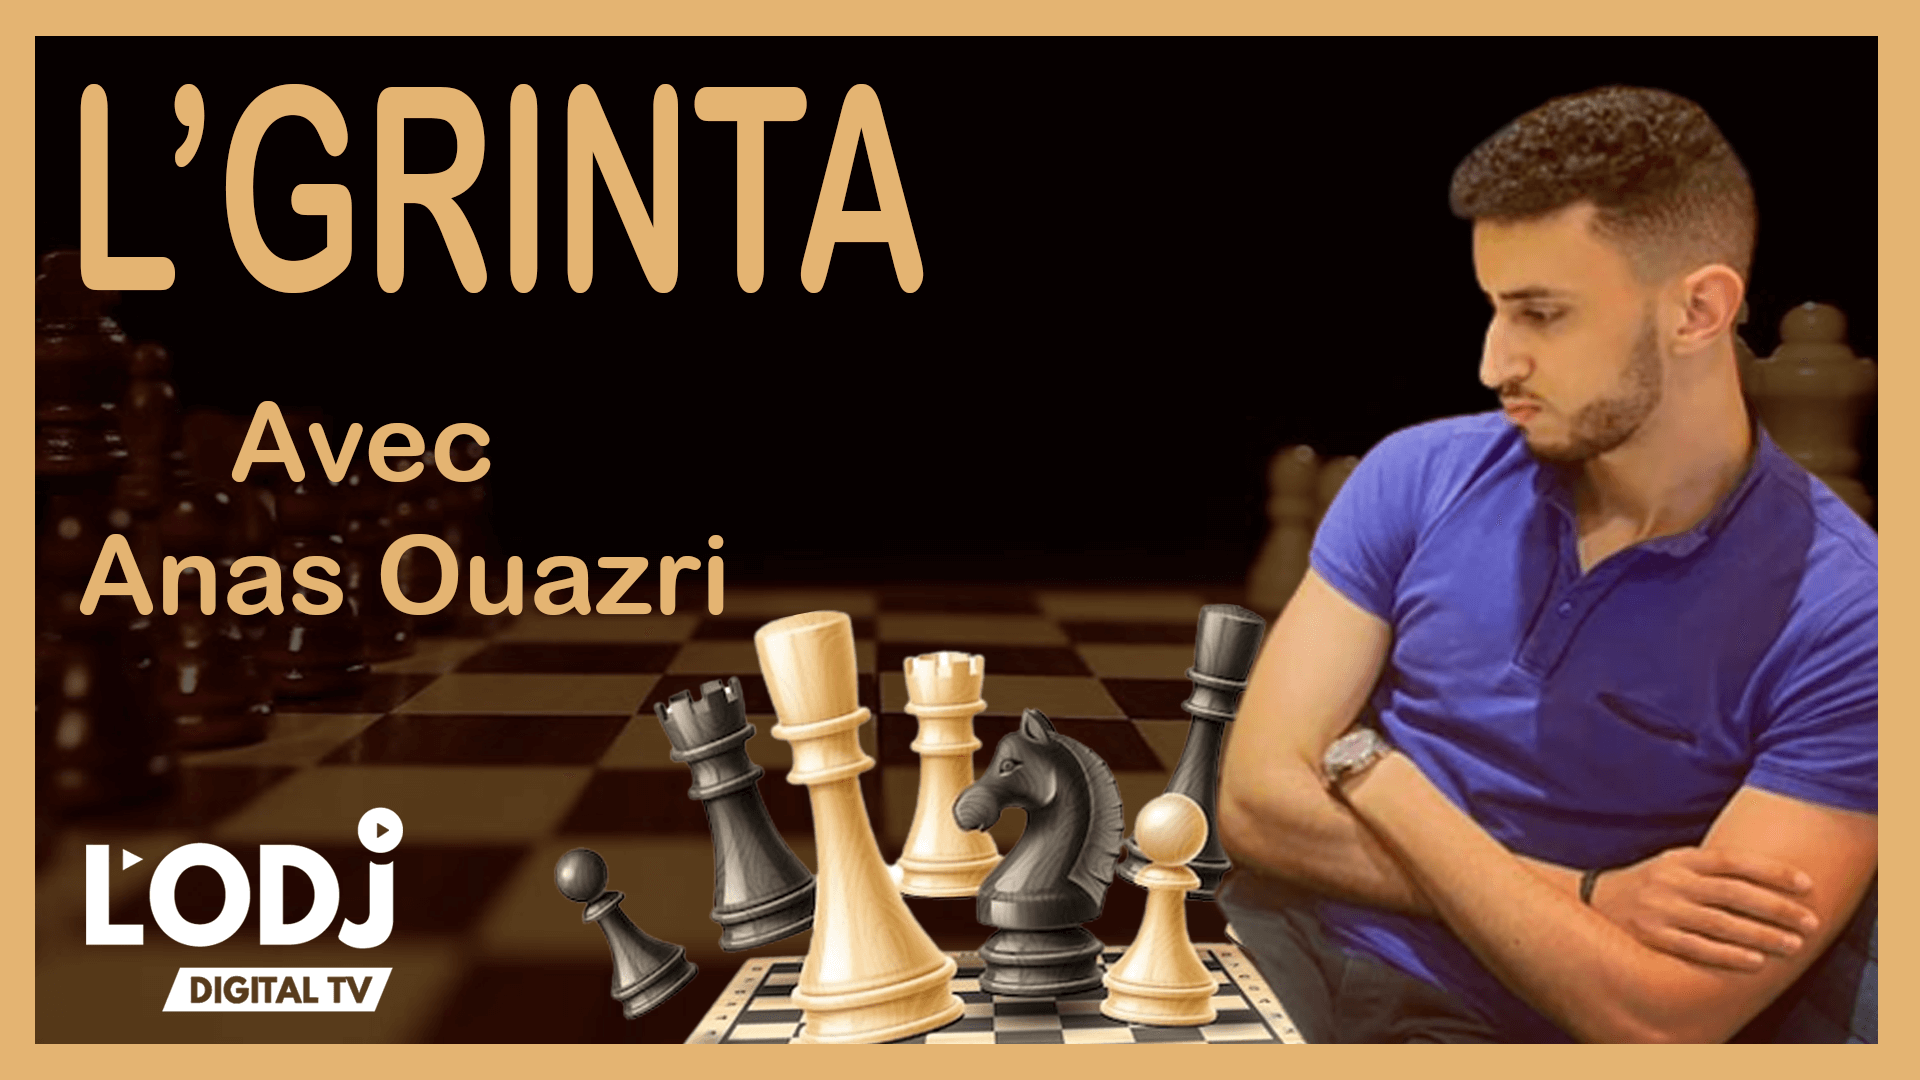 L'émission L'GRINTA reçoit Anas Ouazri : jeux d’échecs